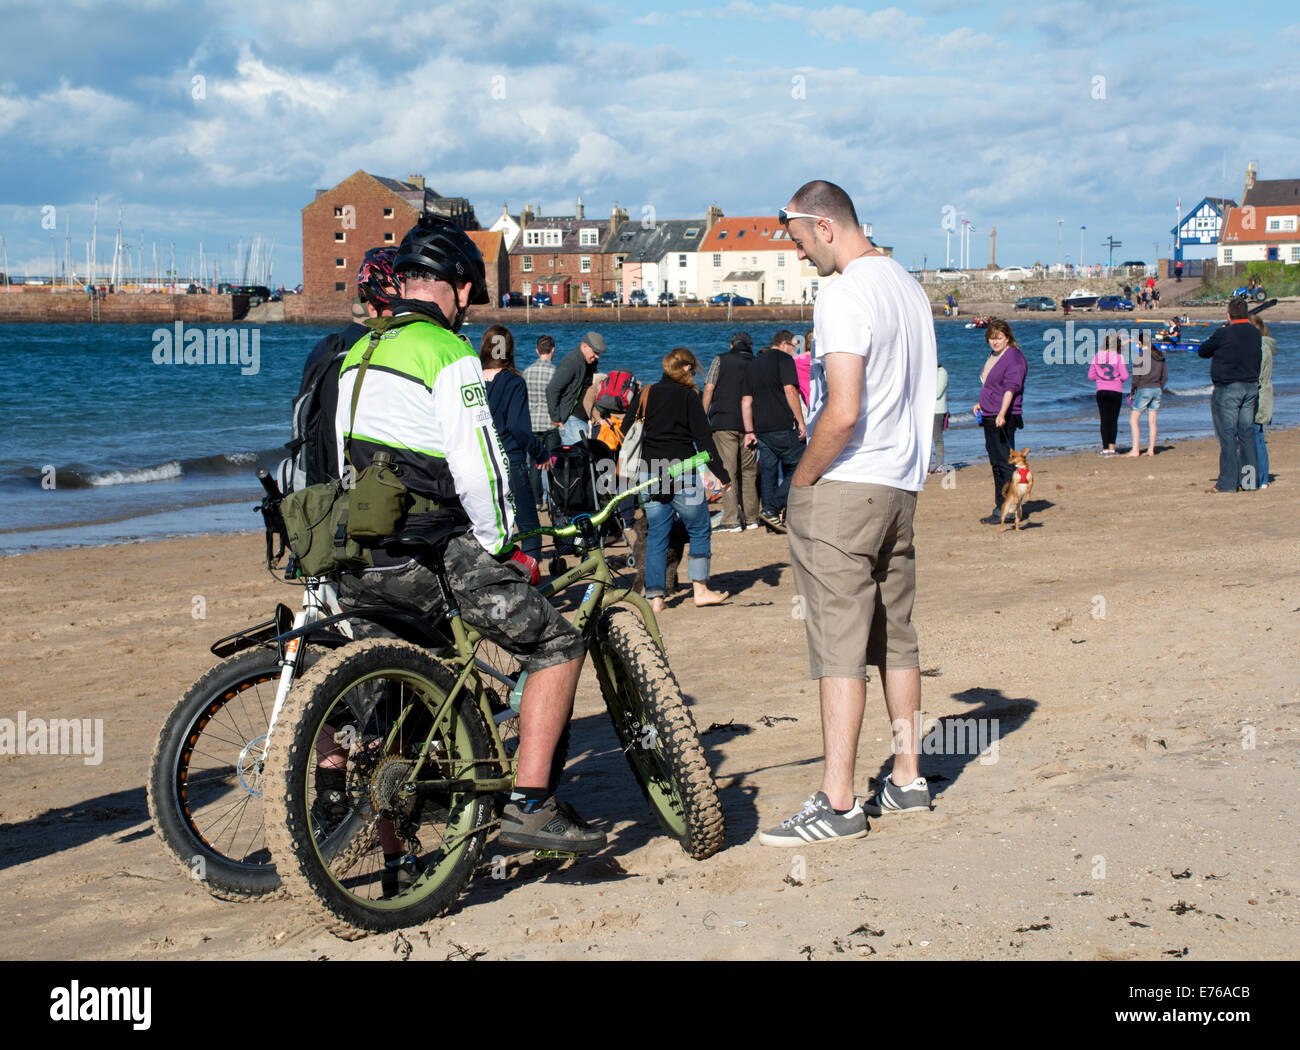 Super big bike tires aiutano a ciclo sulla spiaggia sabbiosa a North Berwick. Foto Stock